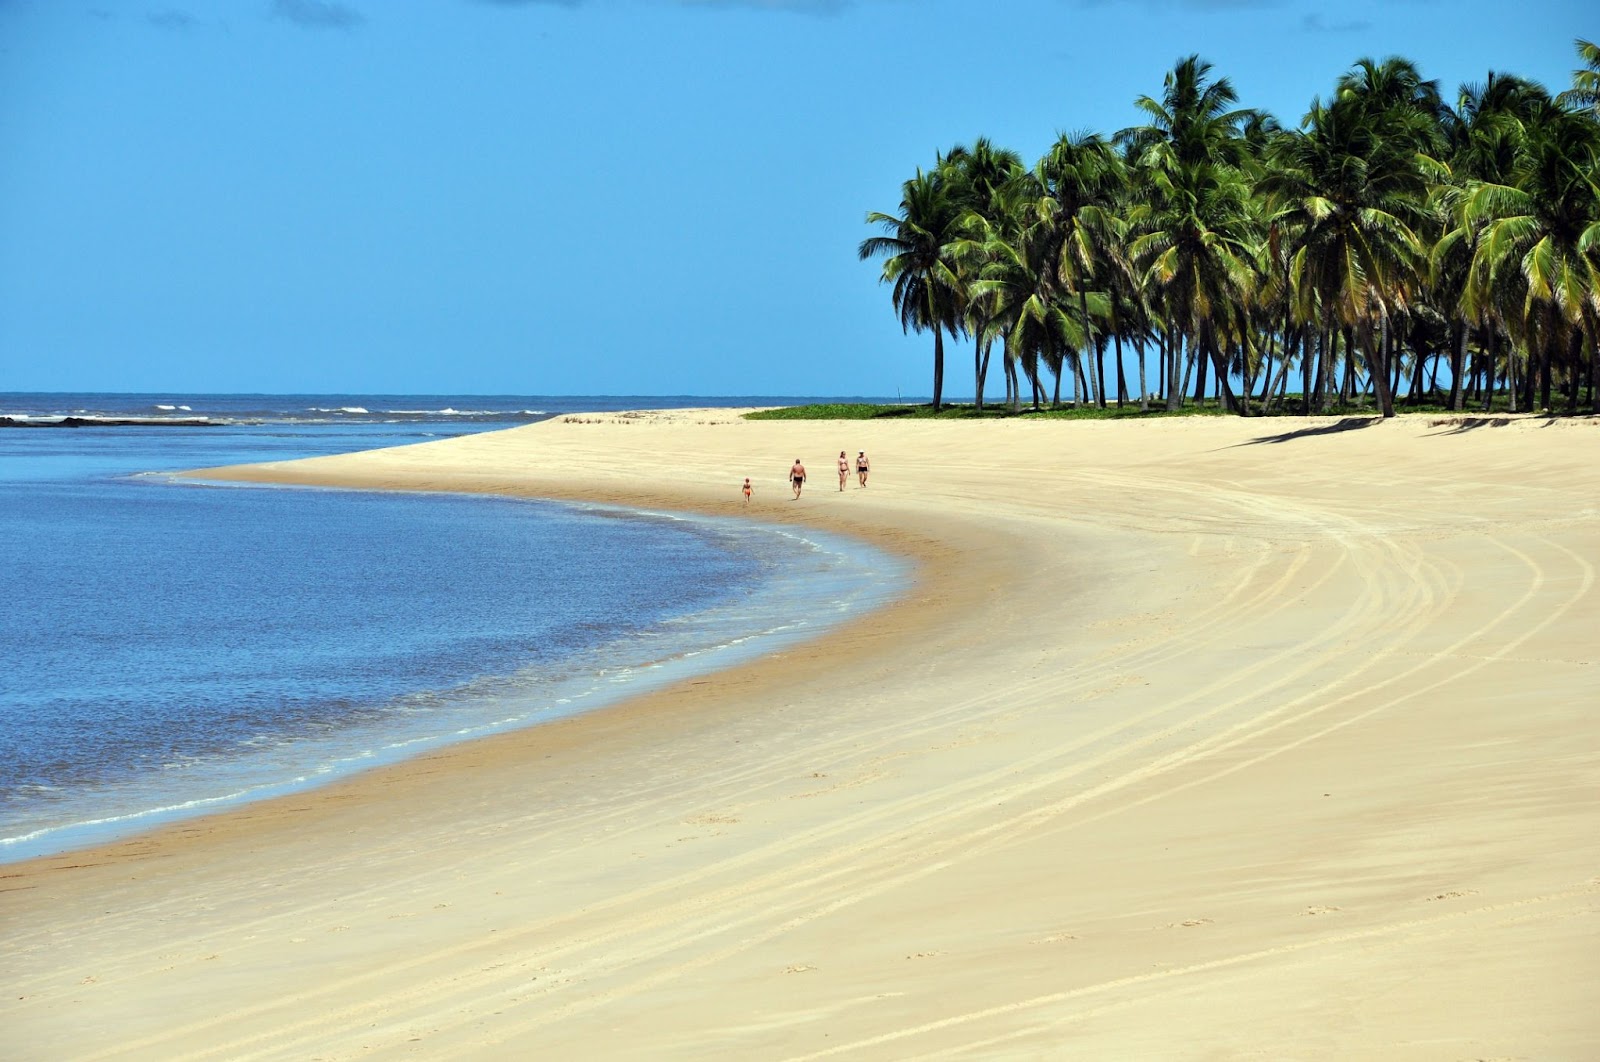 Família caminhando em uma faixa de areia dourada que se estende até o horizonte, na Praia do Gunga. A orla é limitada por um mar sem ondas e por uma mata de coqueiros.